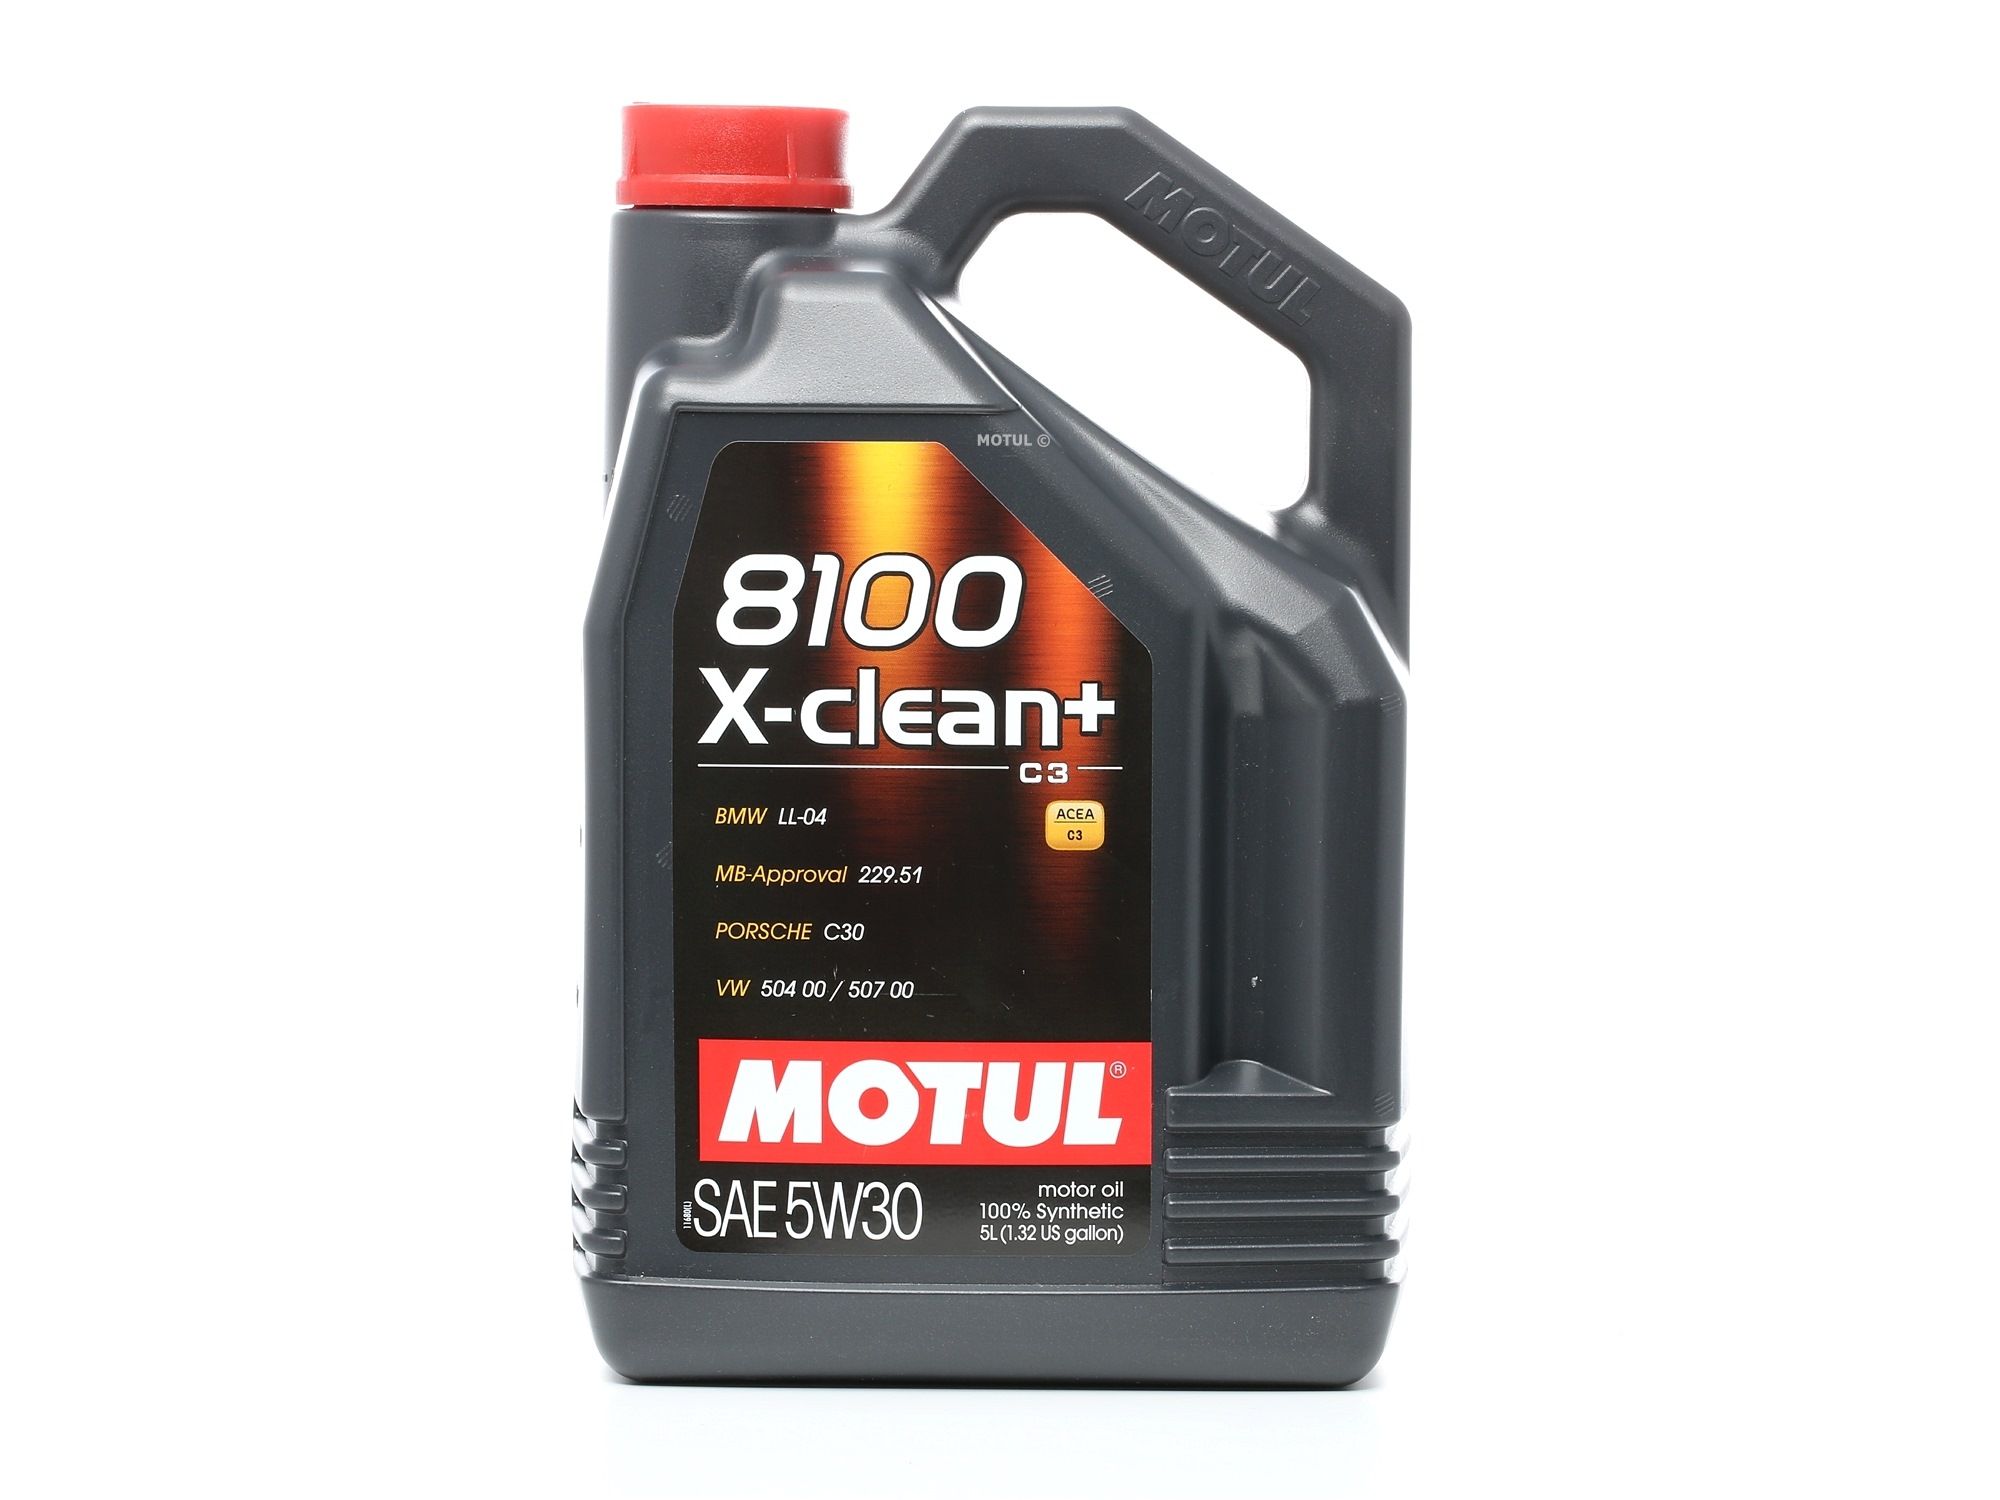 MOTUL 106377 Auto motorolie 5W-30, 5L, Synthetische olie Citroen in originele kwaliteit